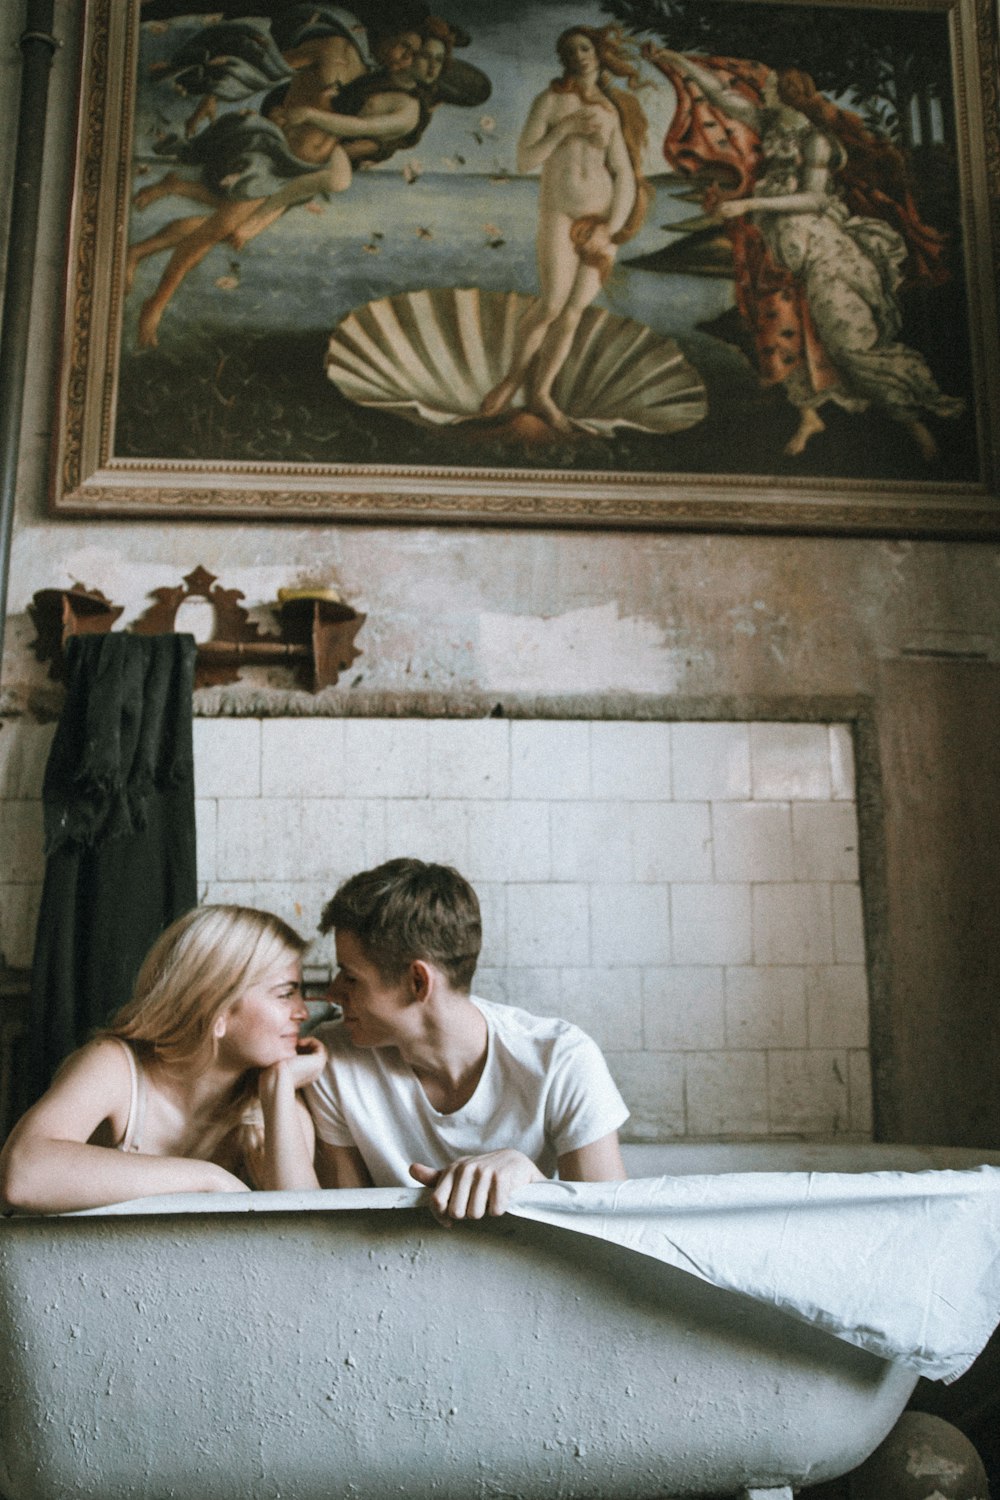 a man and a woman sitting in a bathtub